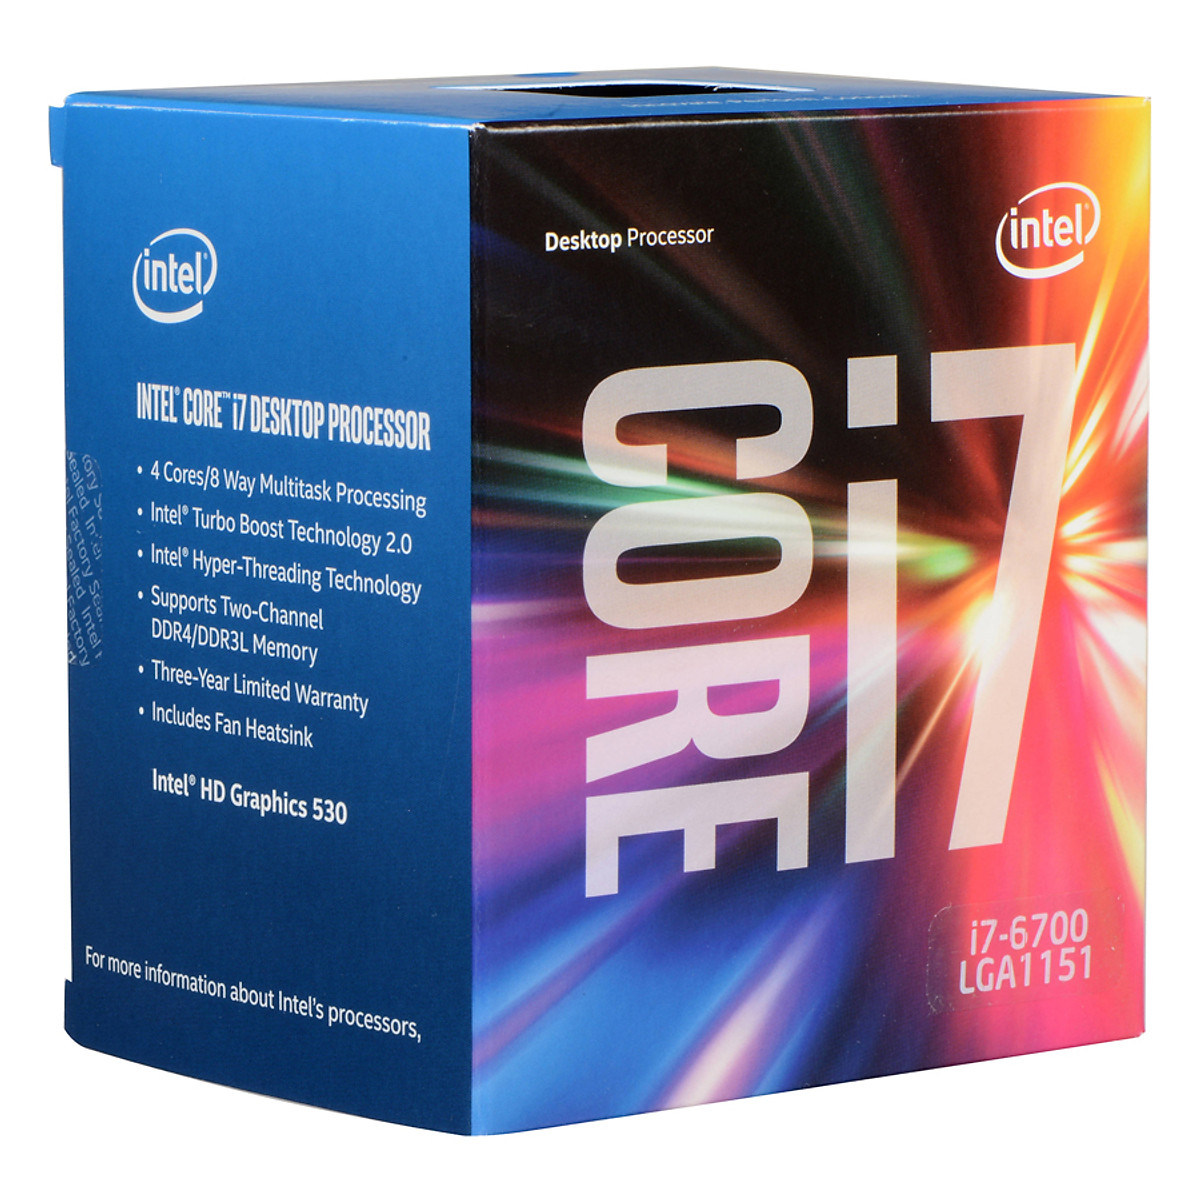 Bộ Vi Xử Lý CPU Intel Core I7 6700 Tray (3.40Ghz, 8MB) + Fan - Hàng Chính Hãng